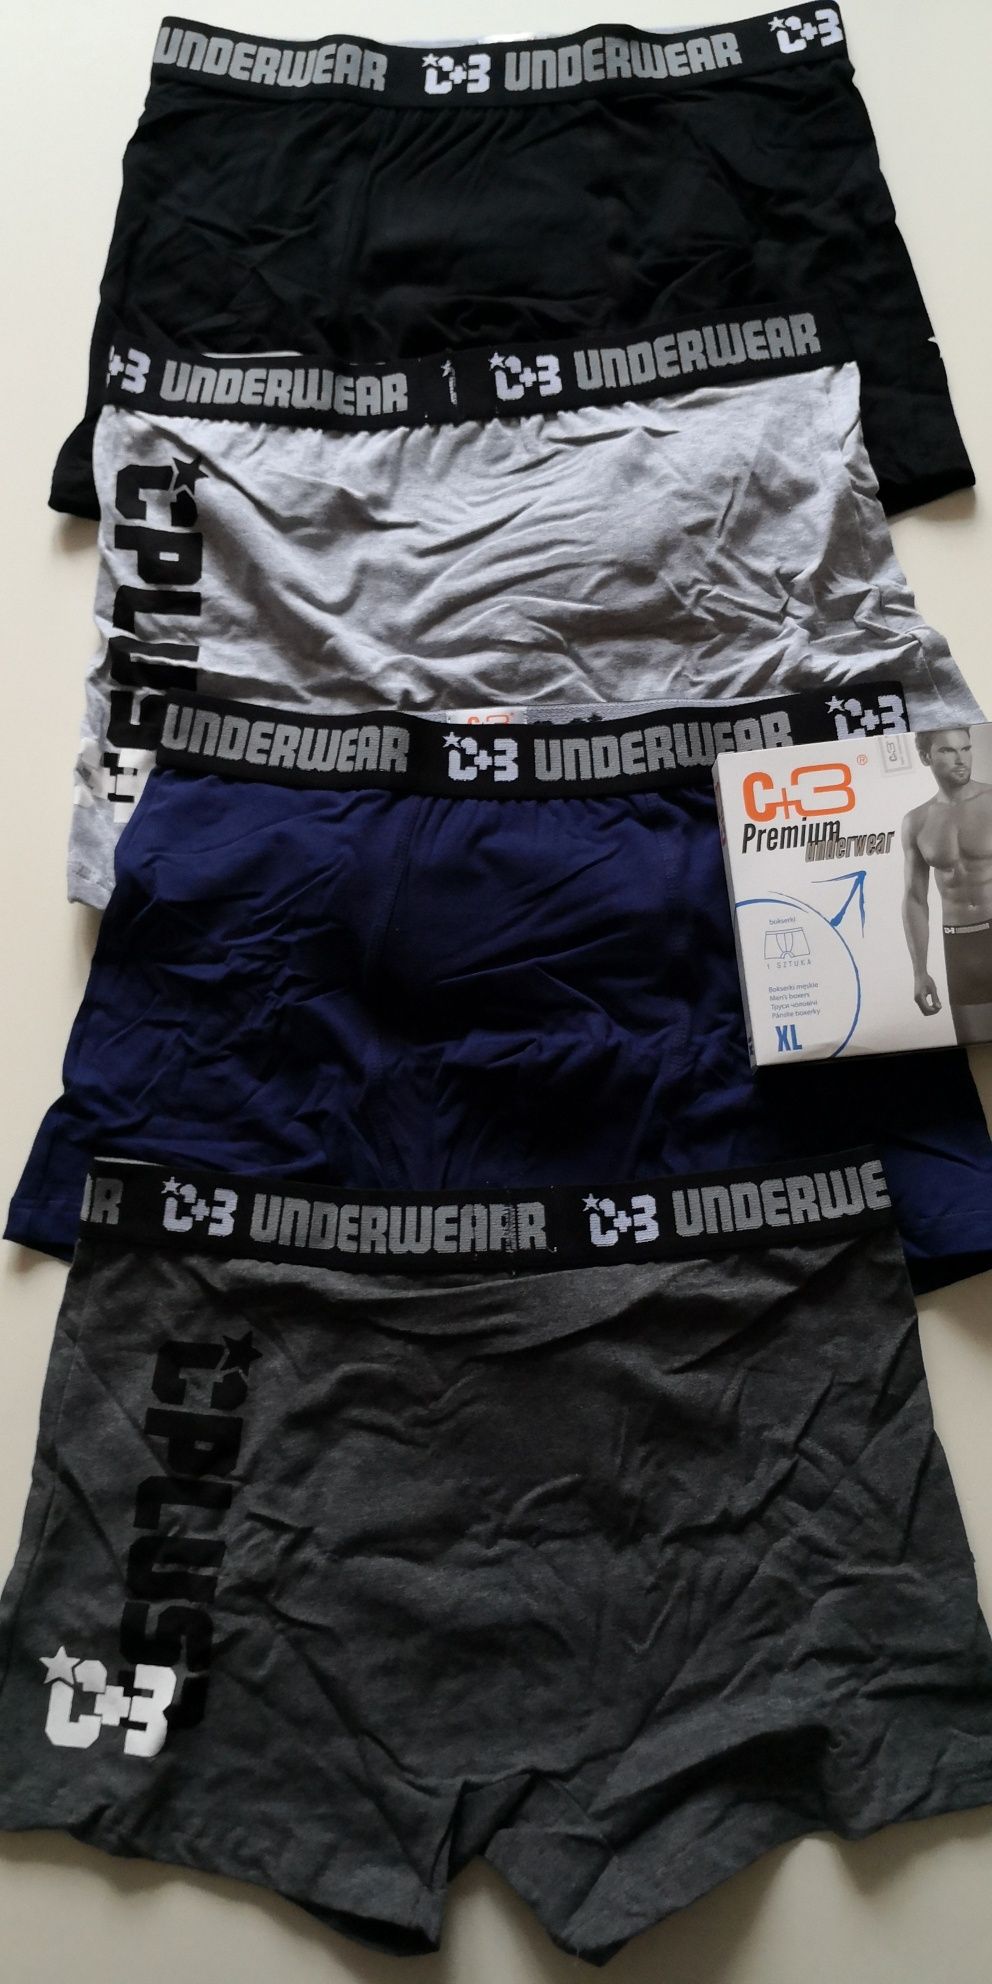 4 x Bokserki męskie C+3 Premium underwear XL